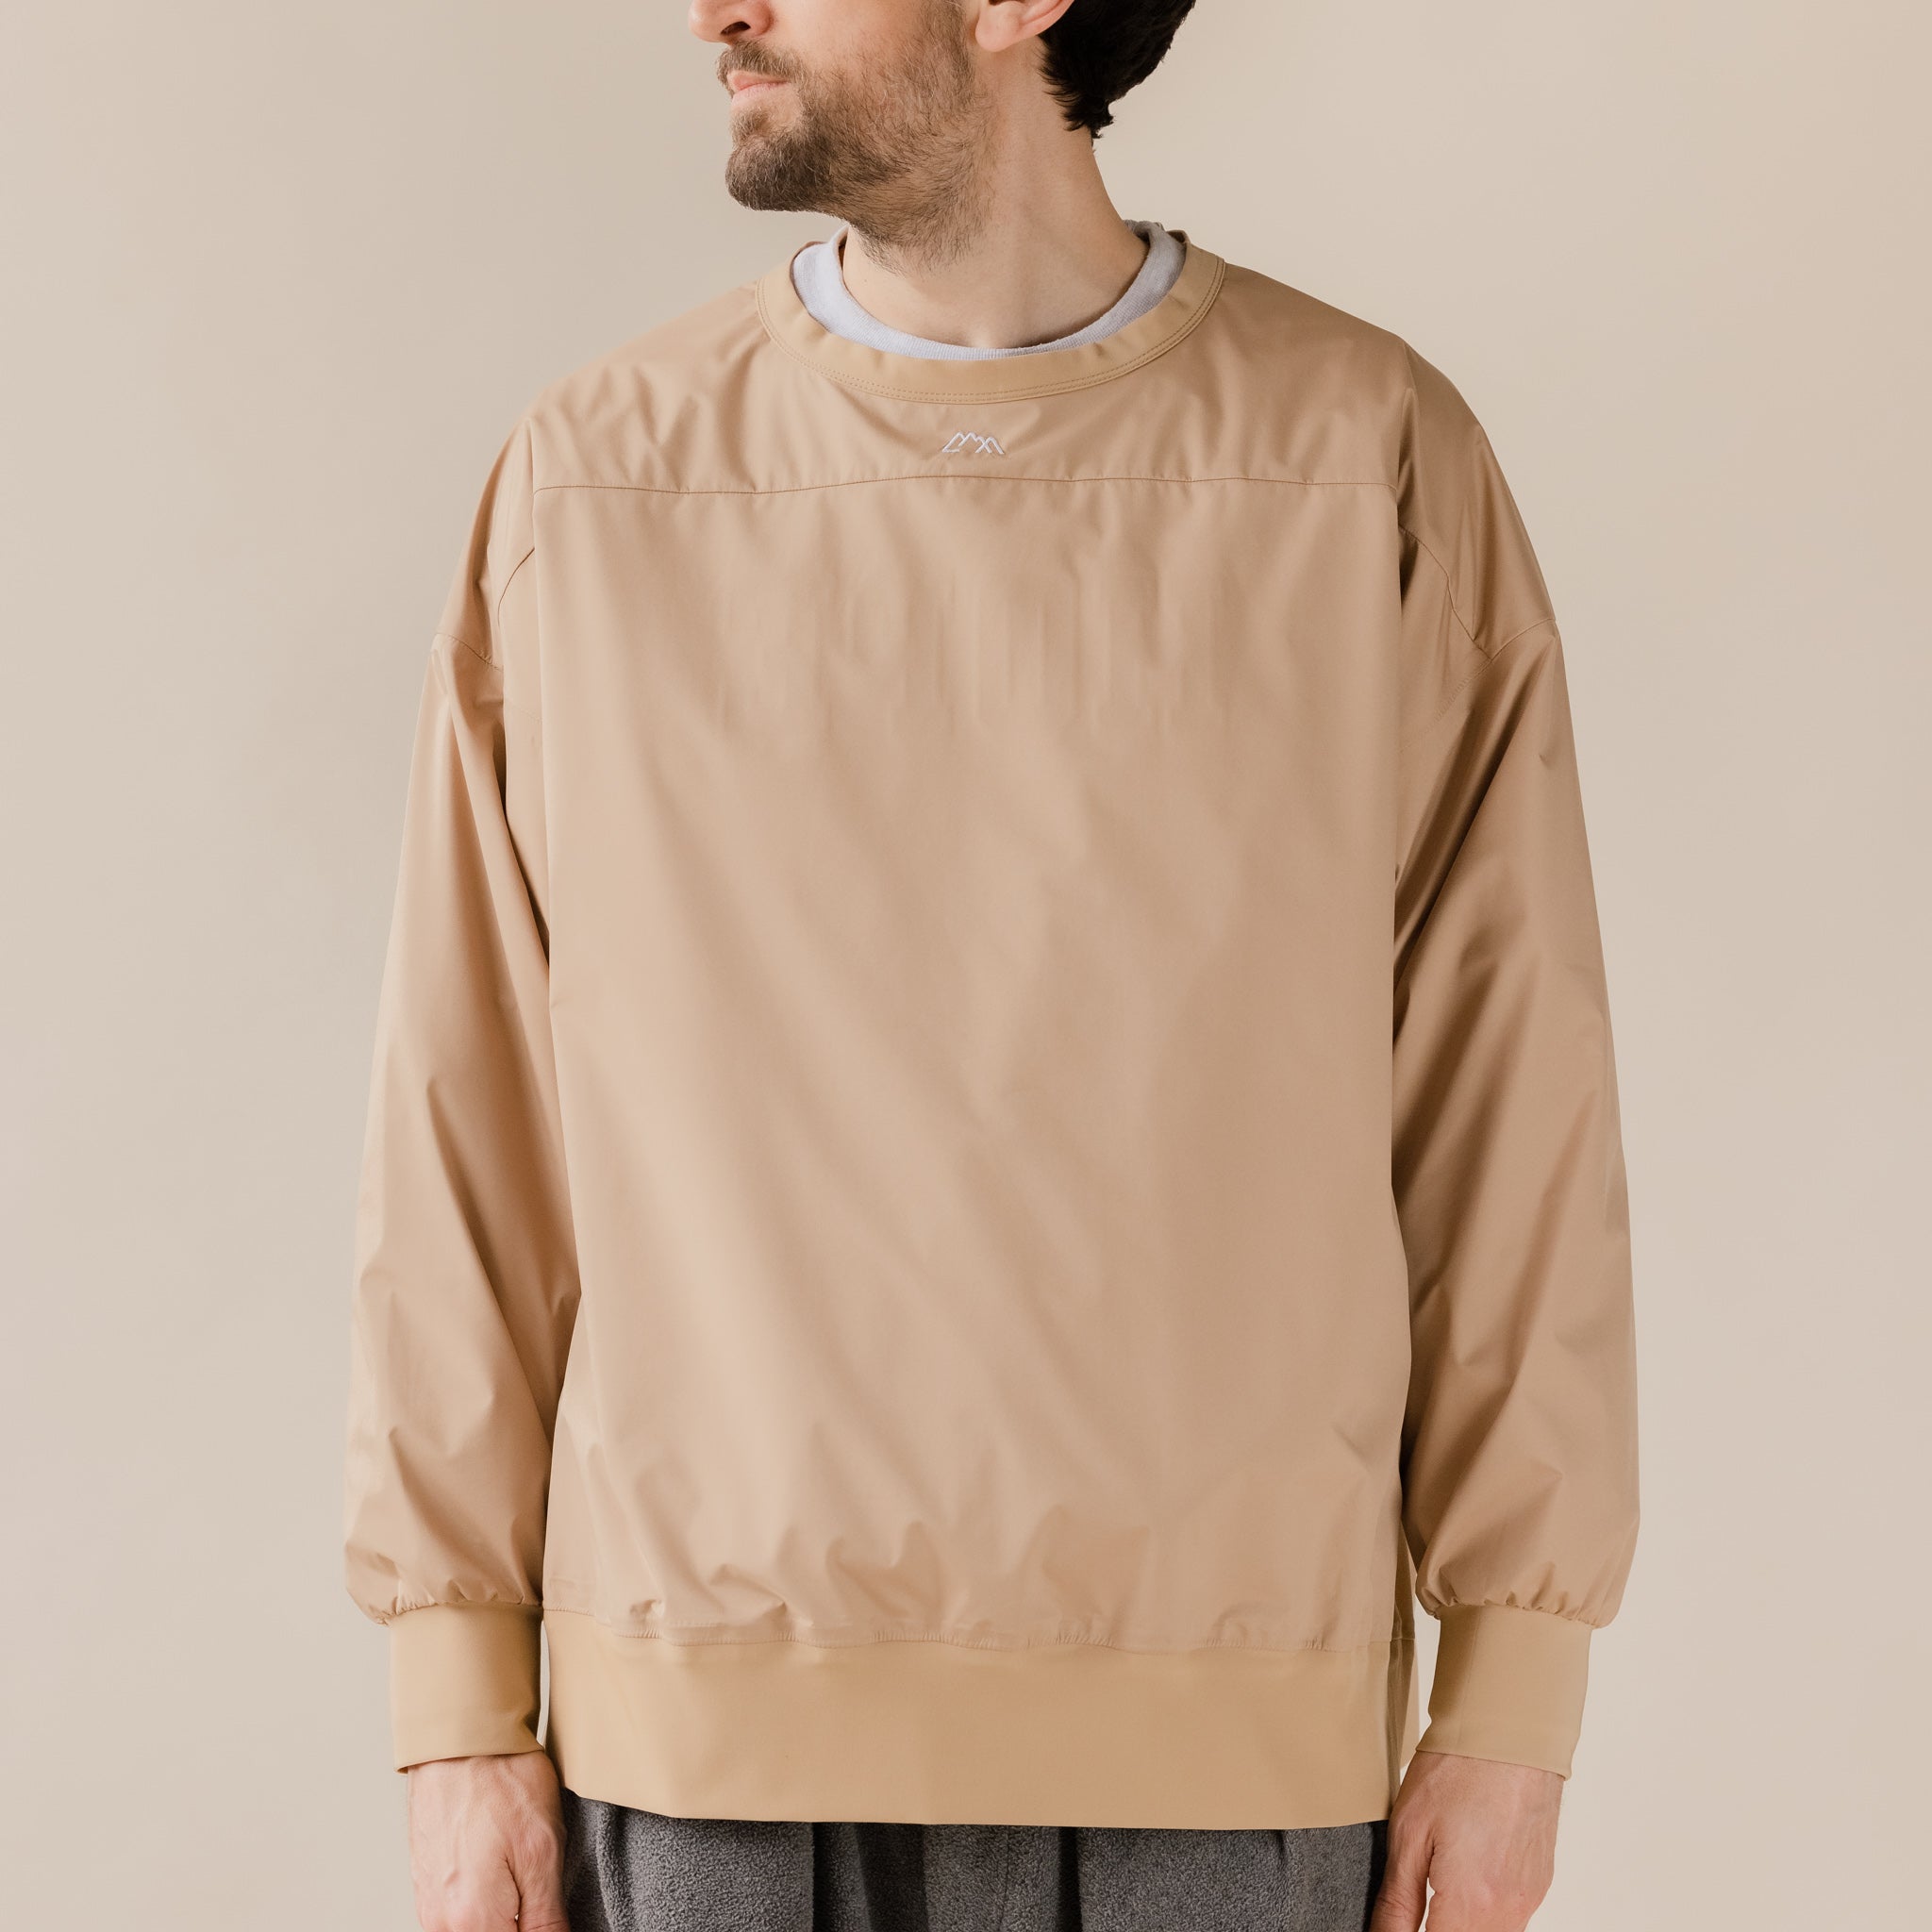 CMF Comfy Outdoor Garment - RW Crew 3 Layer Sweatshirt - Beige UK Stockist Waterproof Best Price